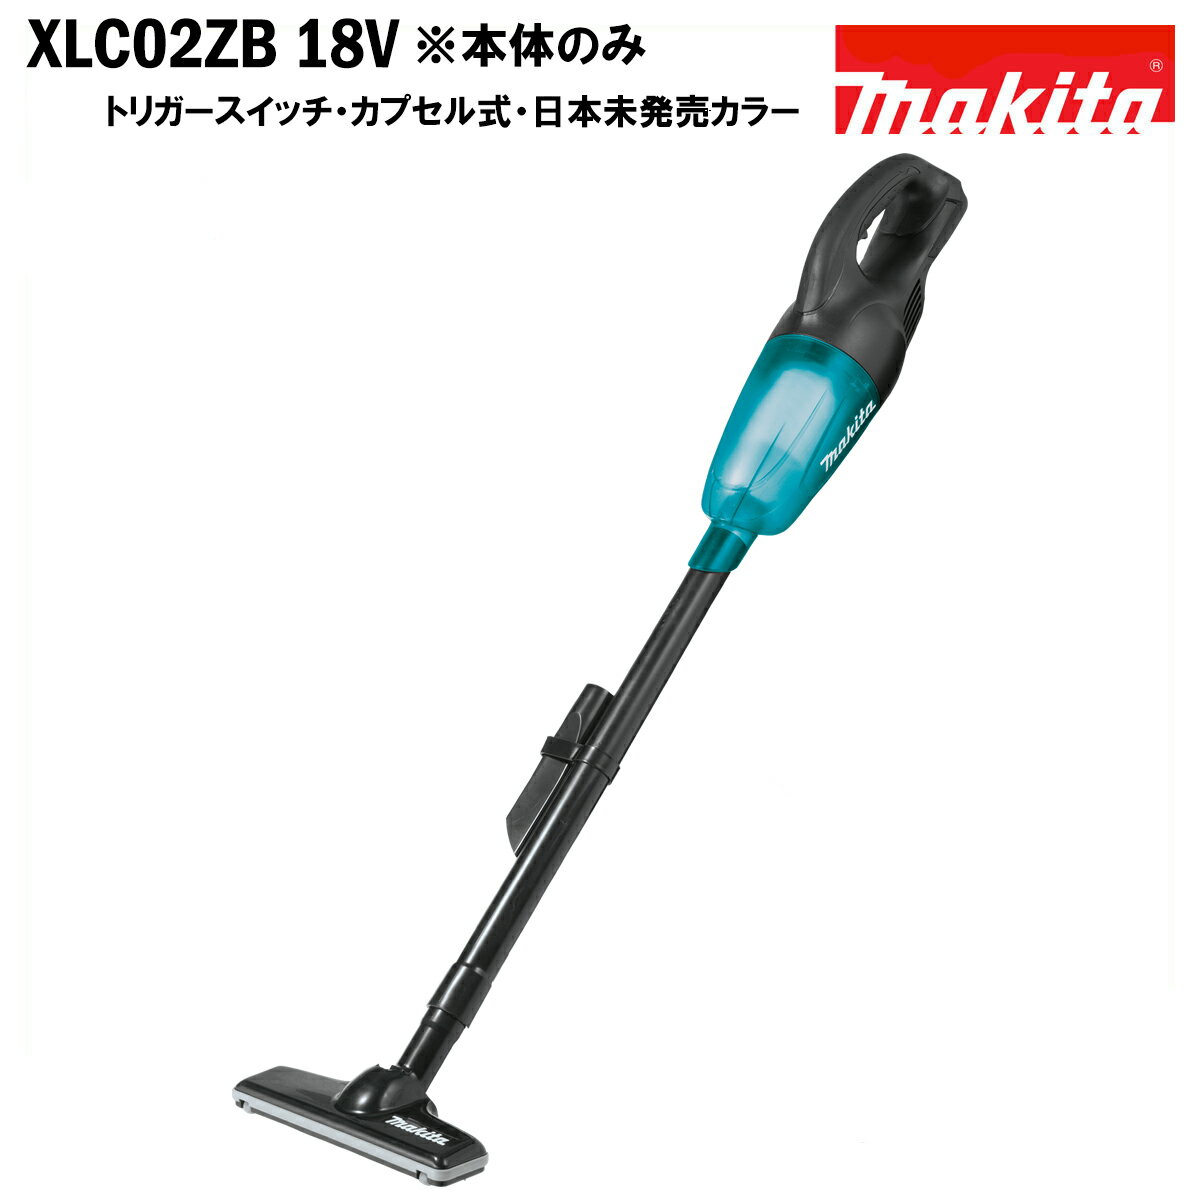 マキタ コードレス掃除機 マキタ 掃除機 クリーナー 充電式 コードレス 18V MAKITA XLC02ZB 限定カラー 日本未発売 本体のみ 掃除機 クリーナー（CL180FDZW CL181FDZW）本体のみ